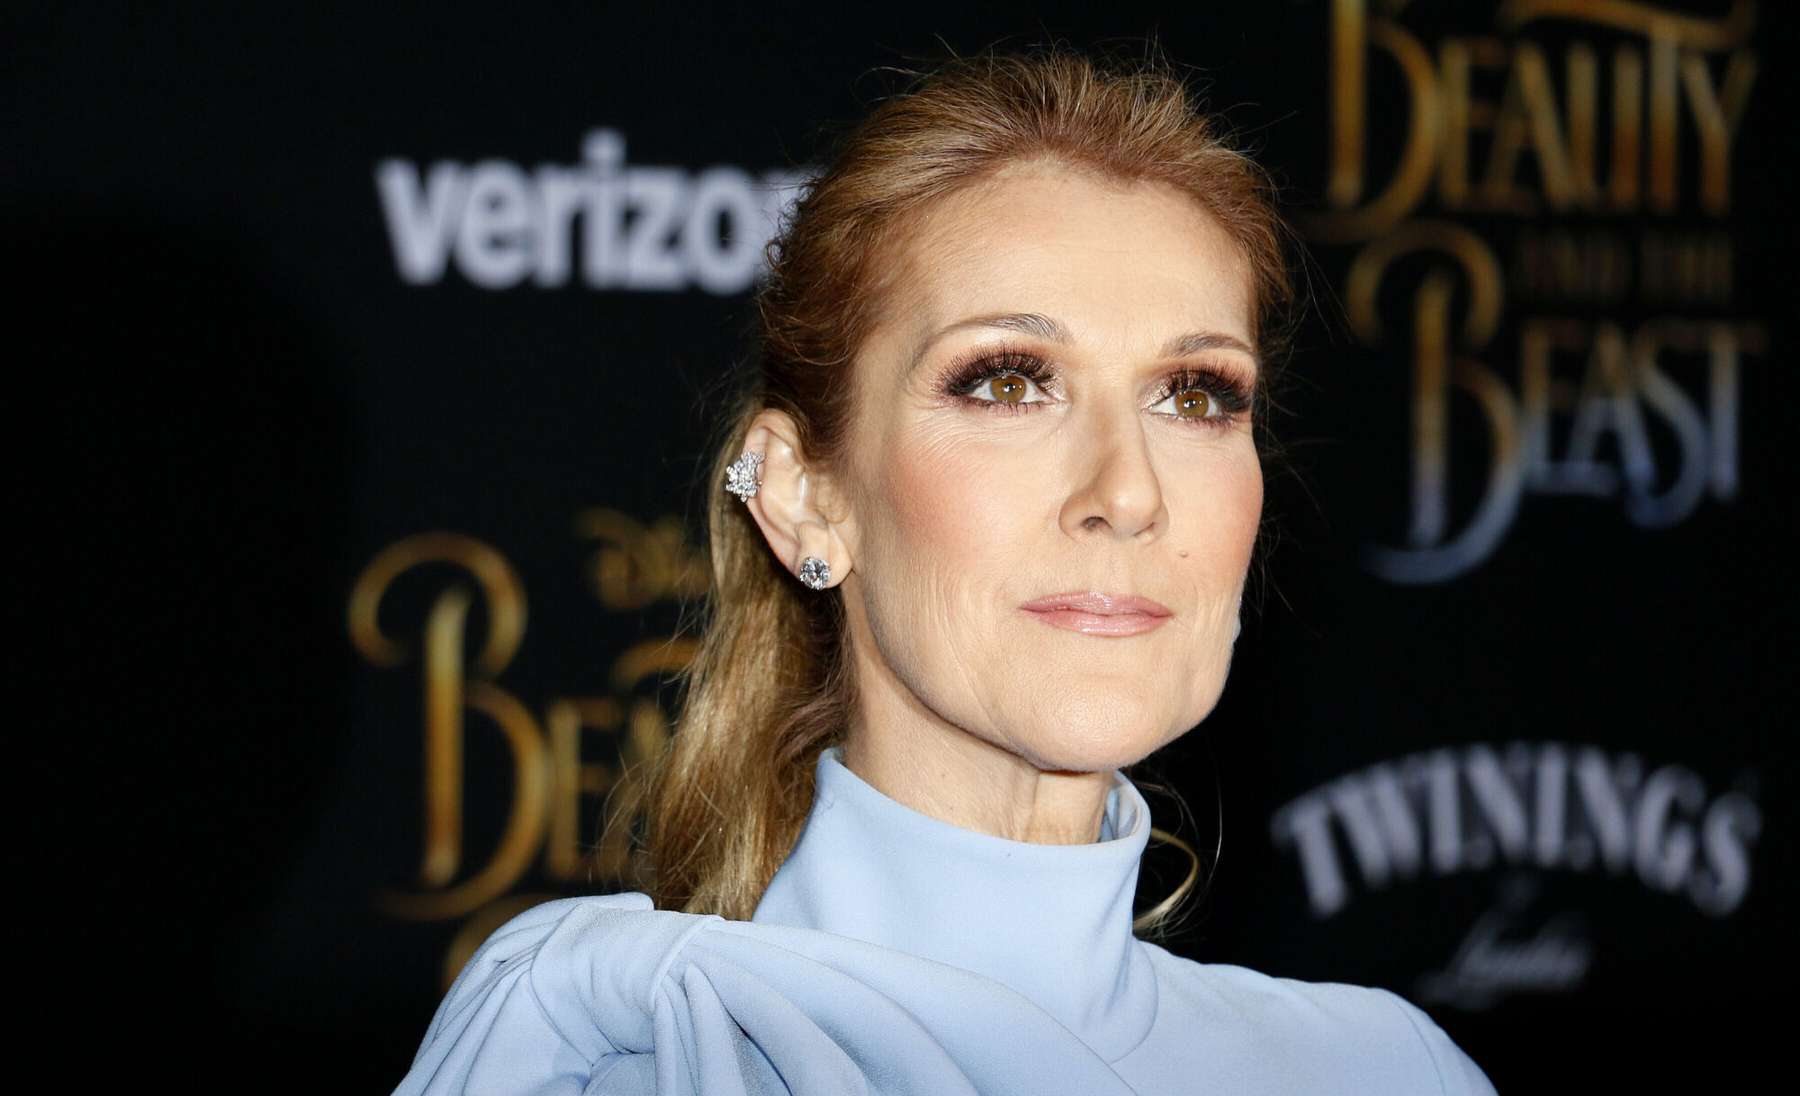 Celine Dioni õde teatas lauljanna tervise halvenemisest